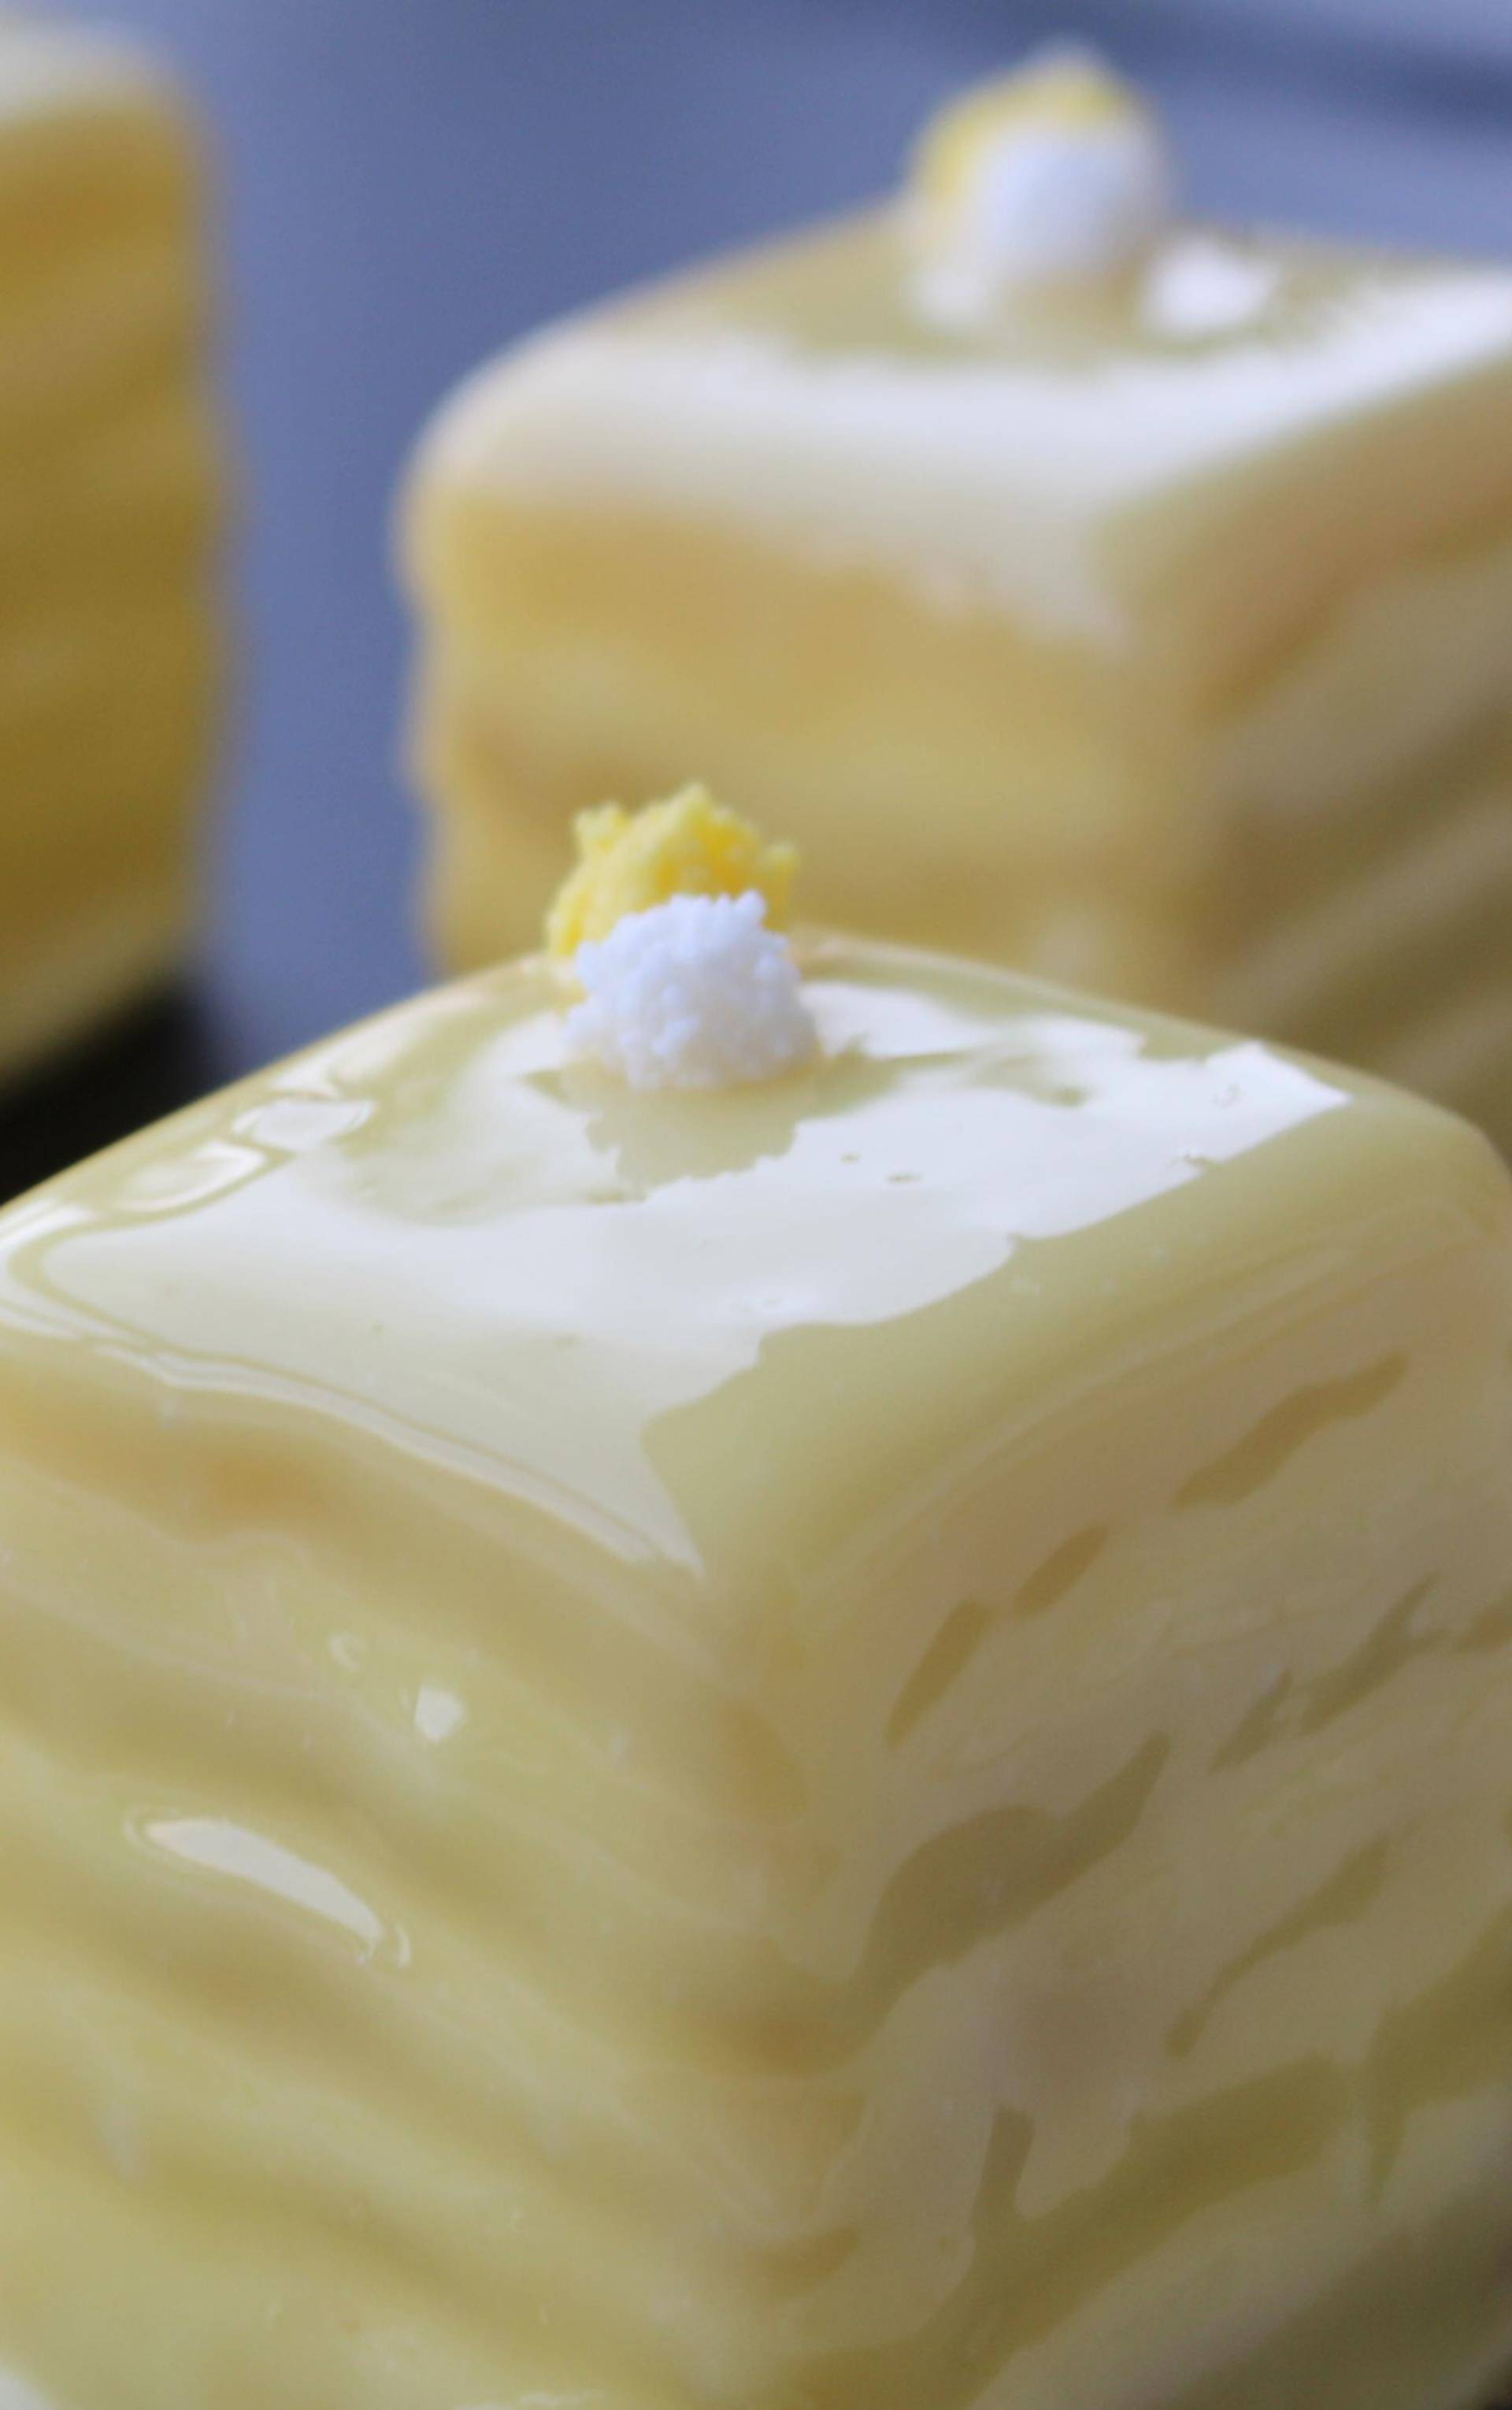 Patit fours: Fini kolačići slatke tradicije starije od 300 godina